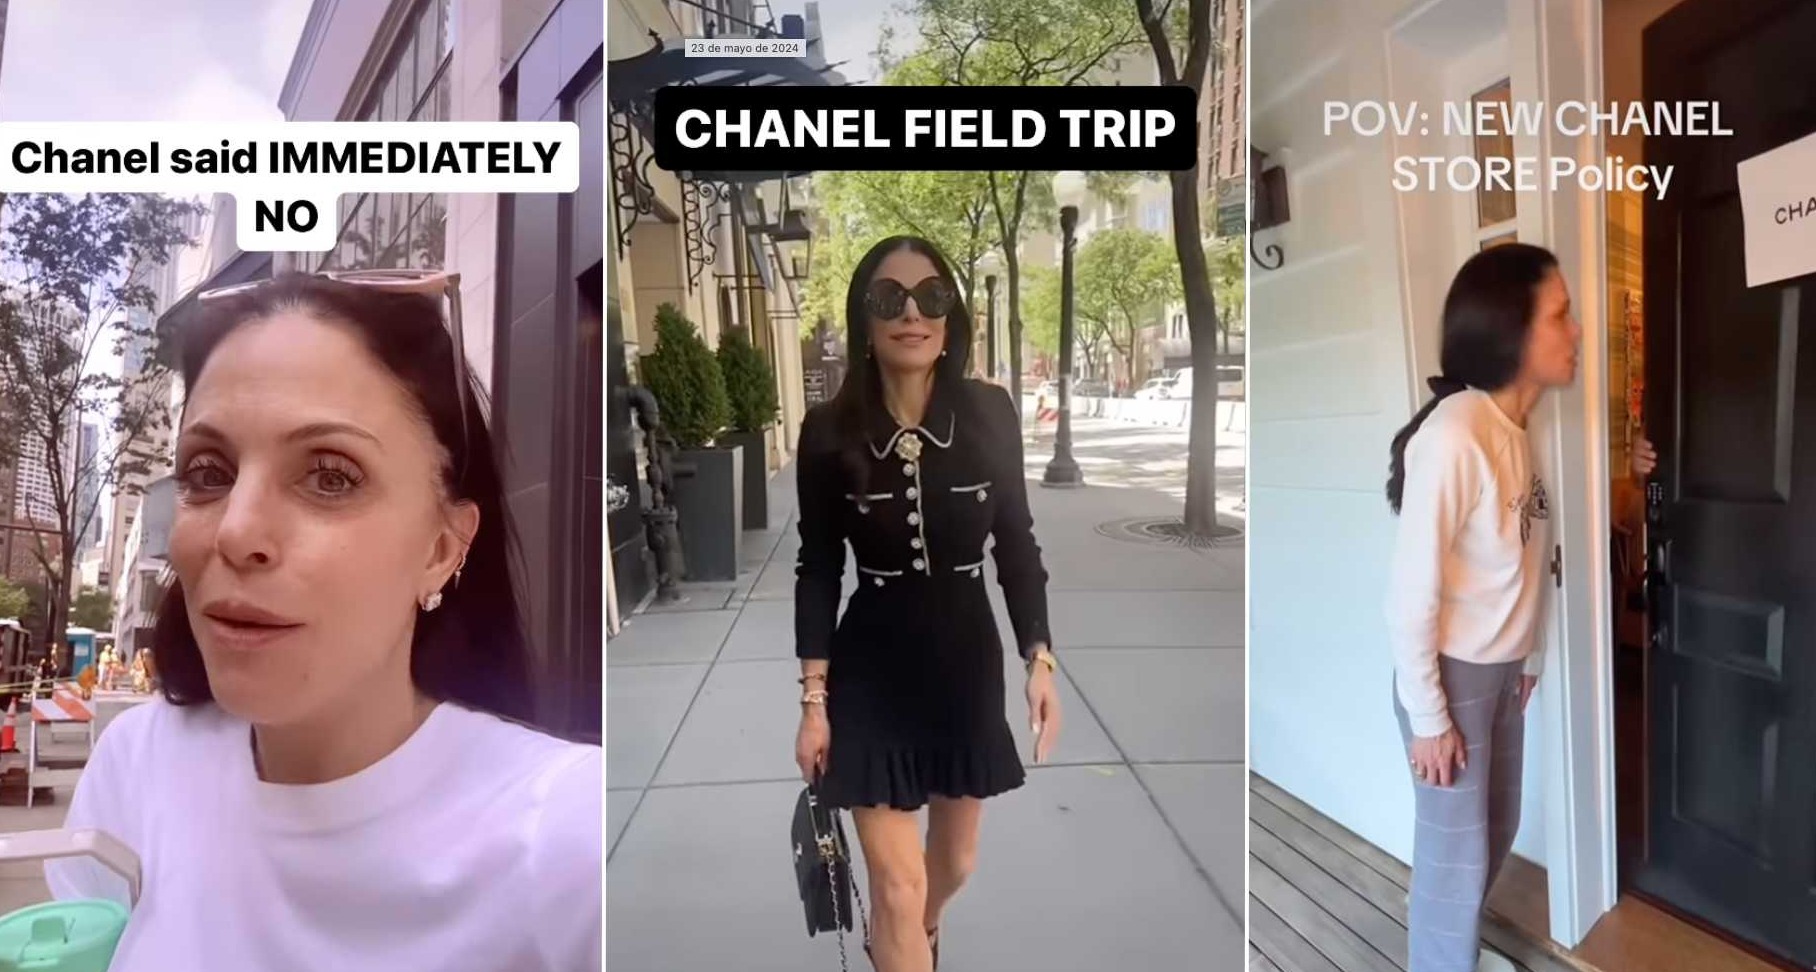 Publicaciones de la influencer Bethenny Frankel criticando a Chanel